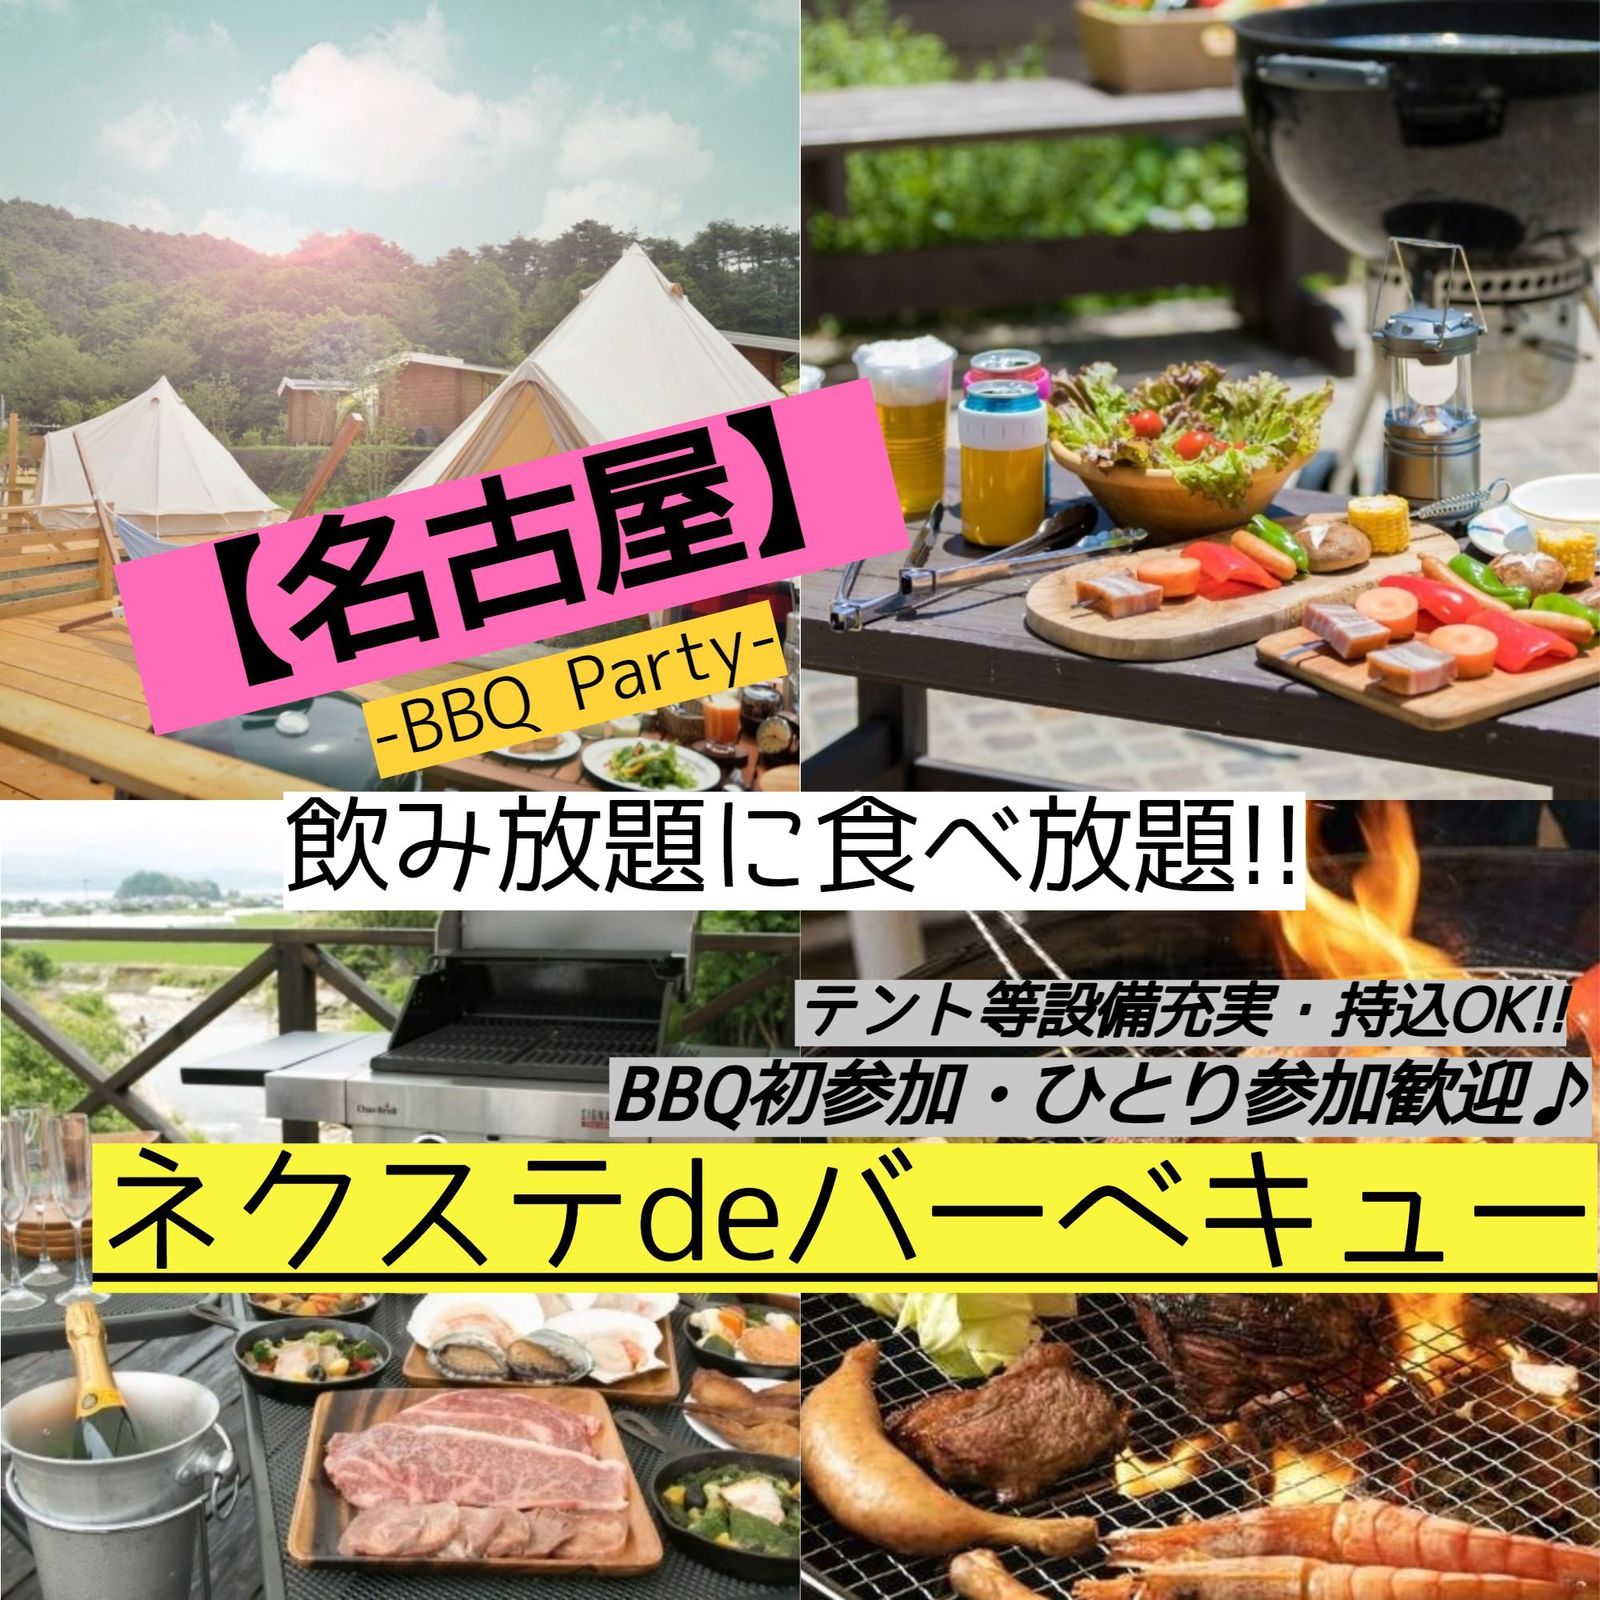 4月30日(日曜)【毎月2回開催・女性主催・名古屋市内・BBQ】飲み・食べ放題!!素敵に本格的なBBQ♪【ネクステdeバーベキュー会】